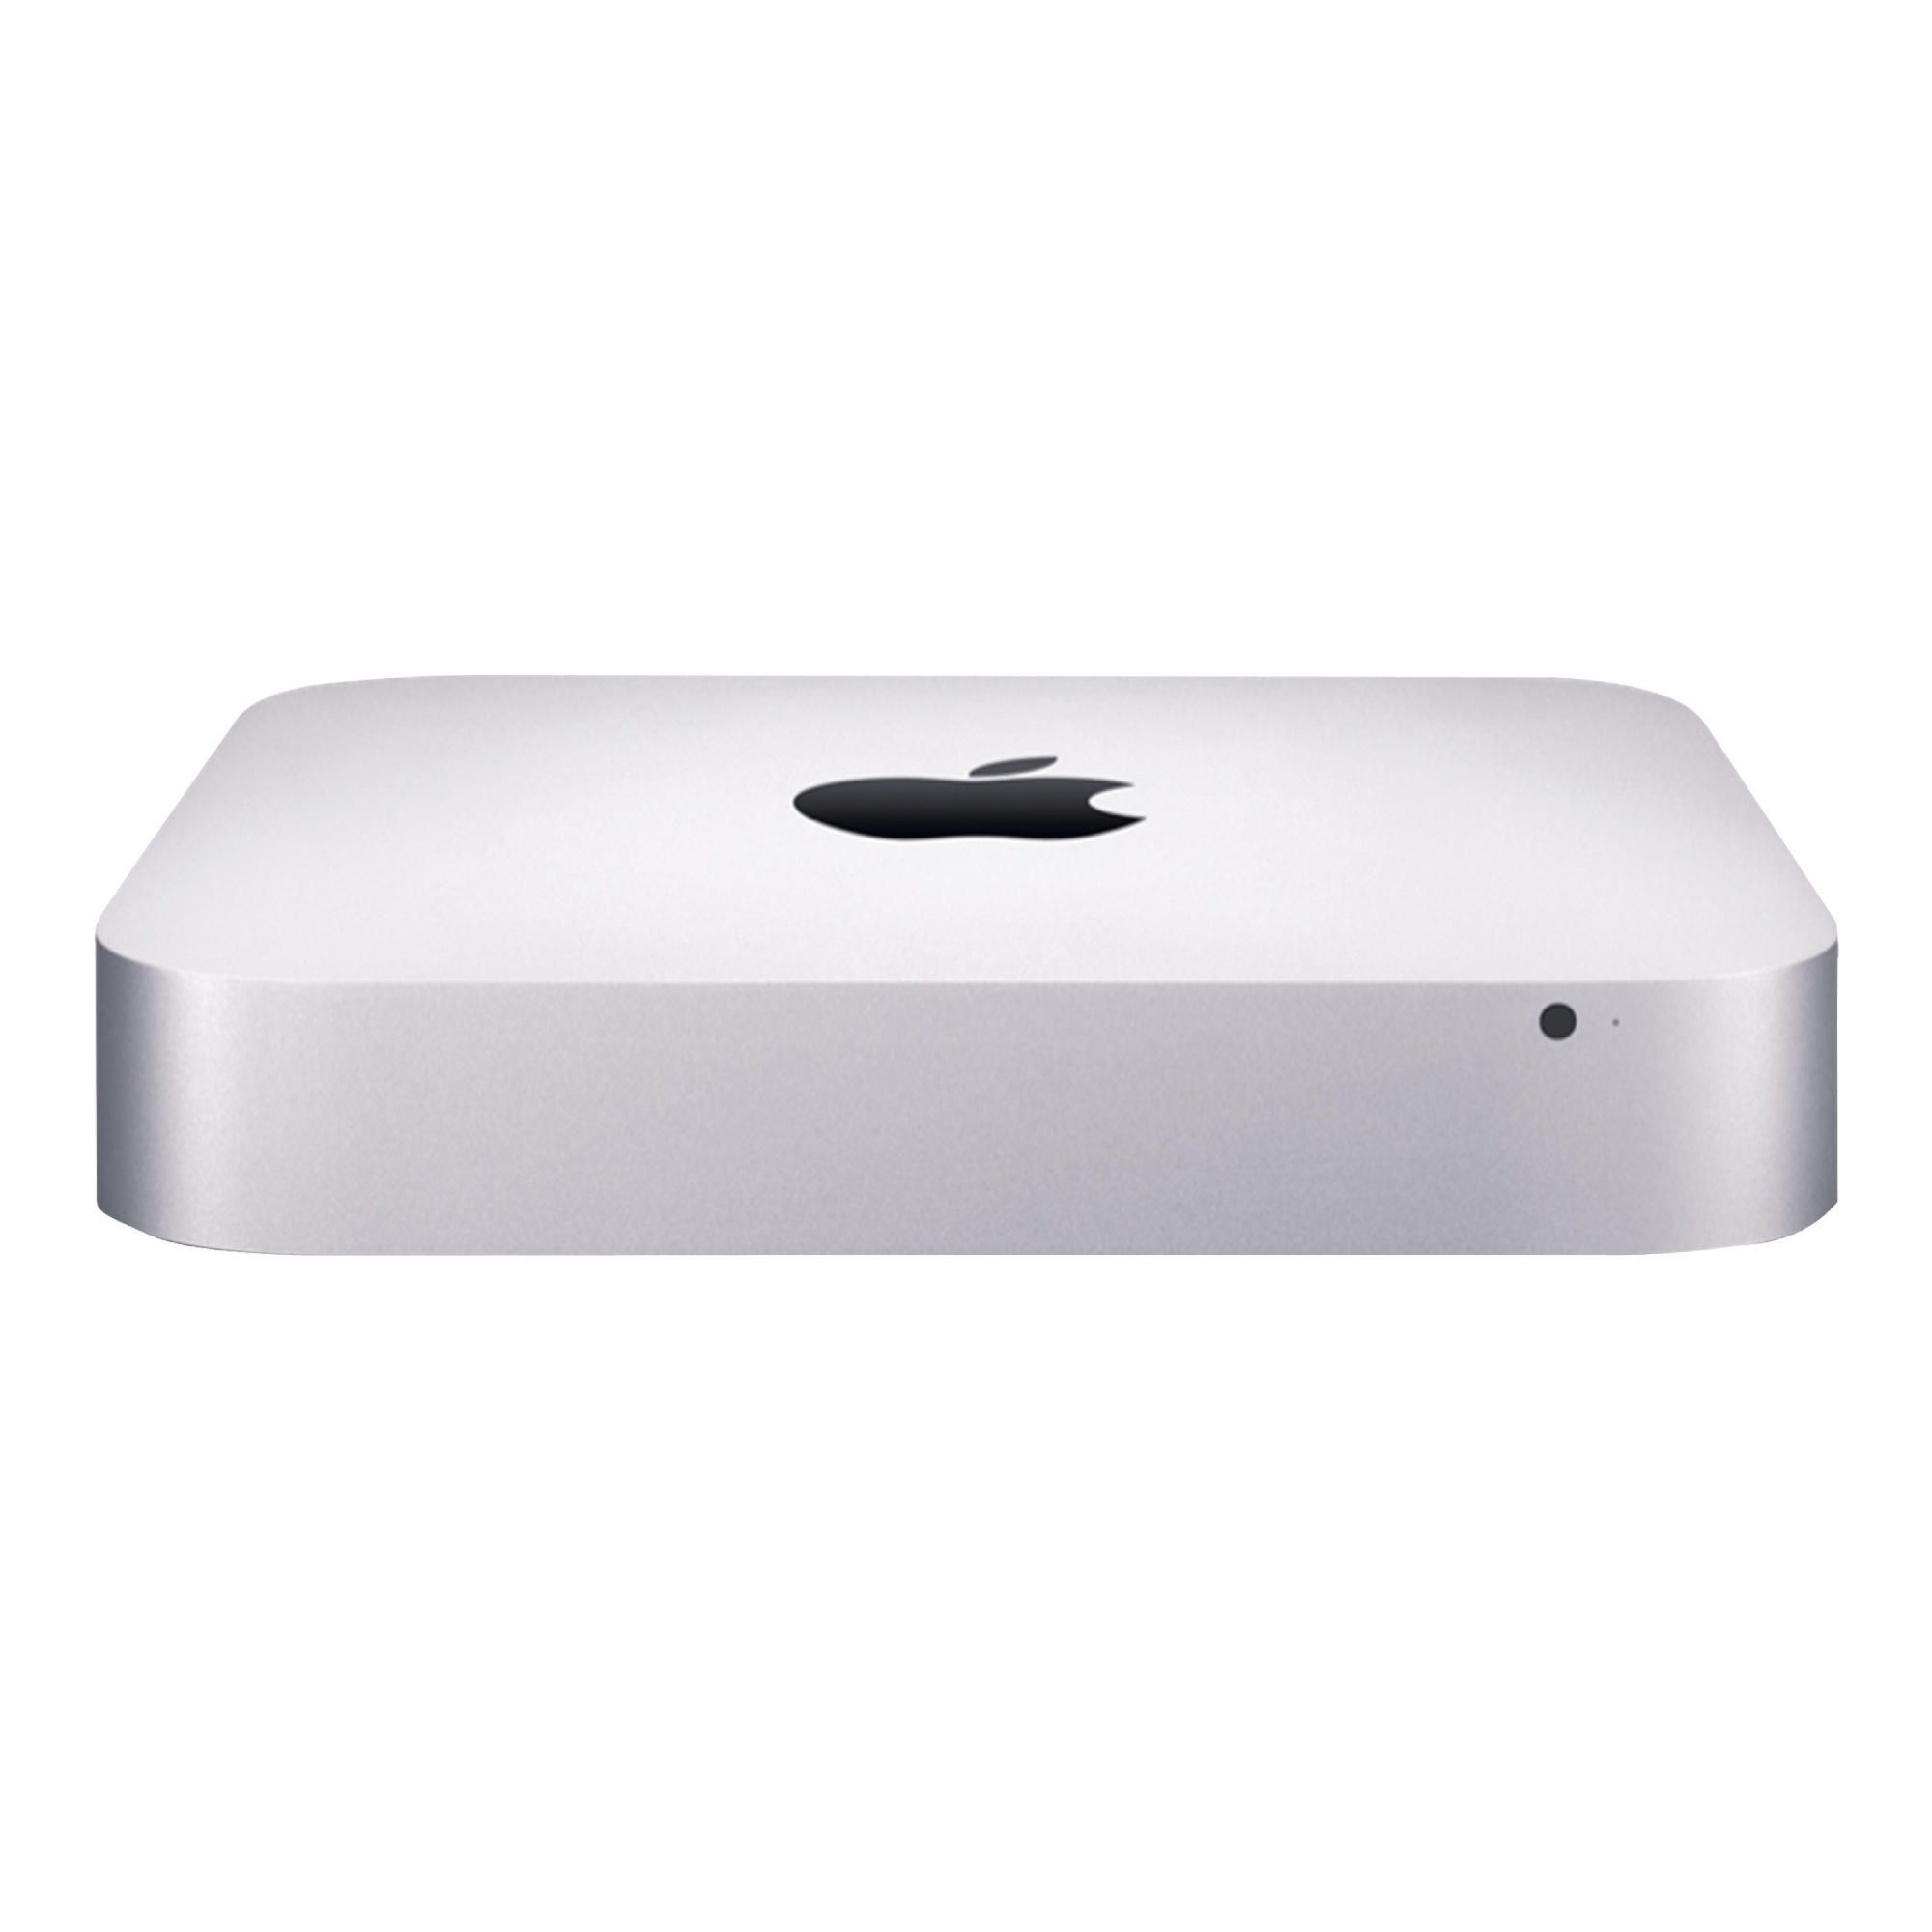 Apple MD387B/A Mac Mini (Intel® Core™ i5, 2.5GHz, 4GB, 500GB) Silver